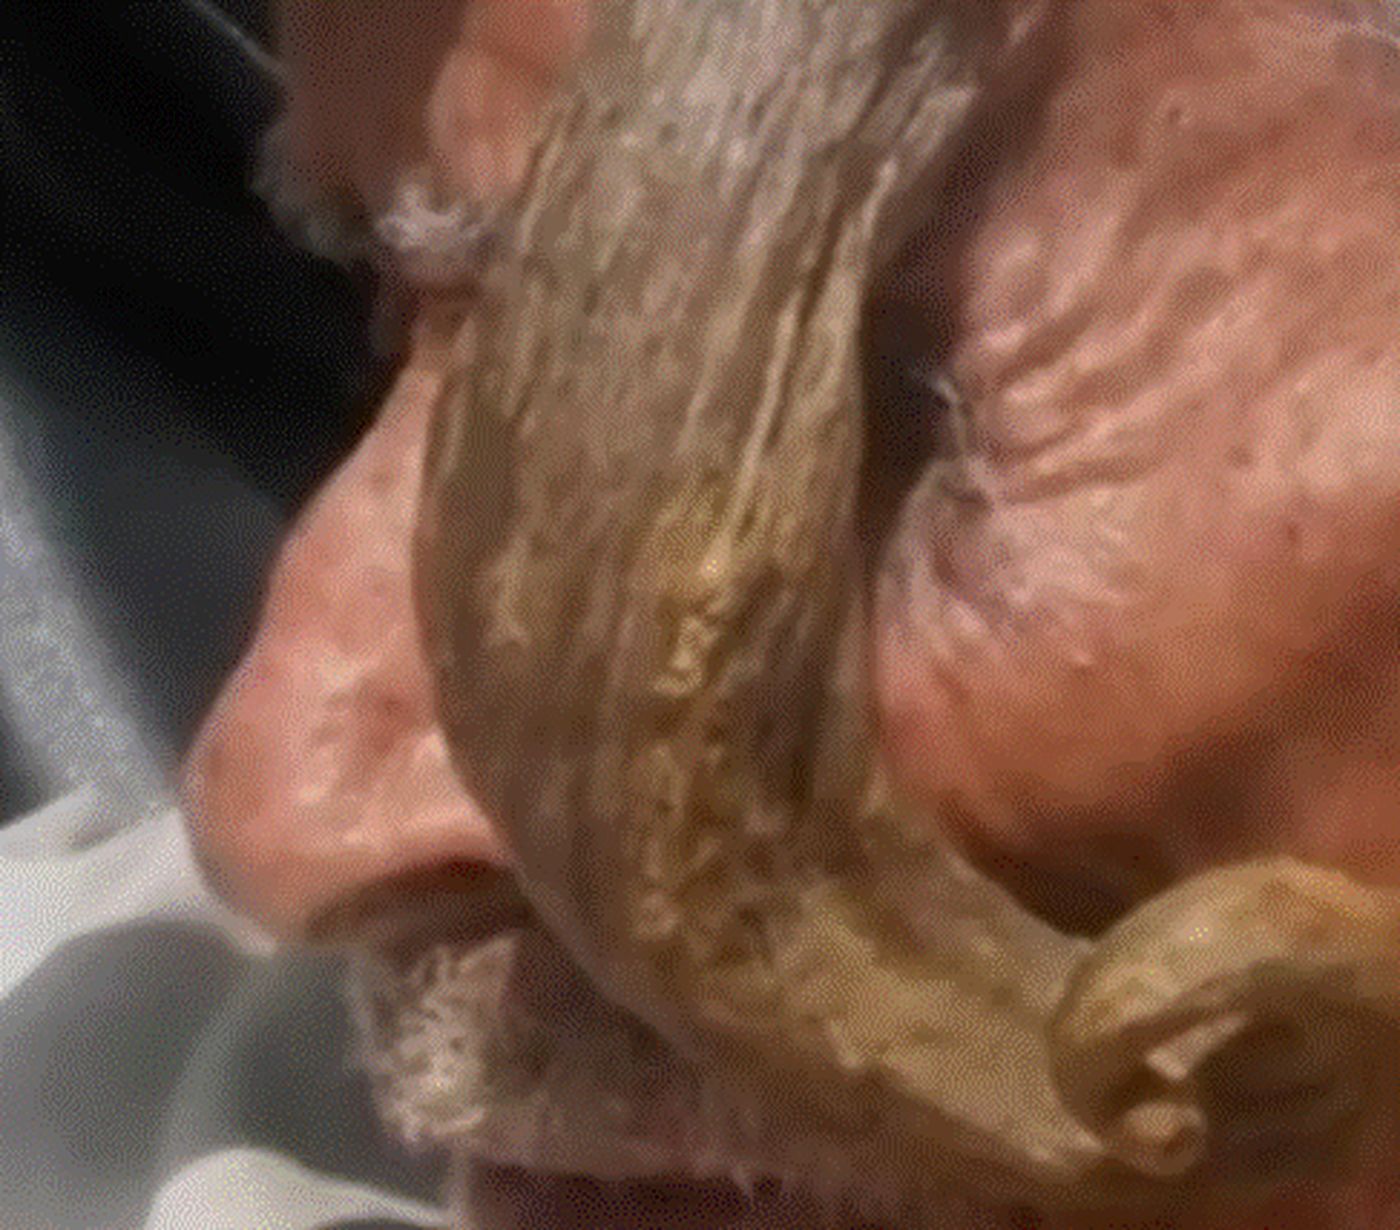 A murit bărbatul cu coarne, cel mai bătrân din lume. Se spune că avea vârsta de 140 de ani